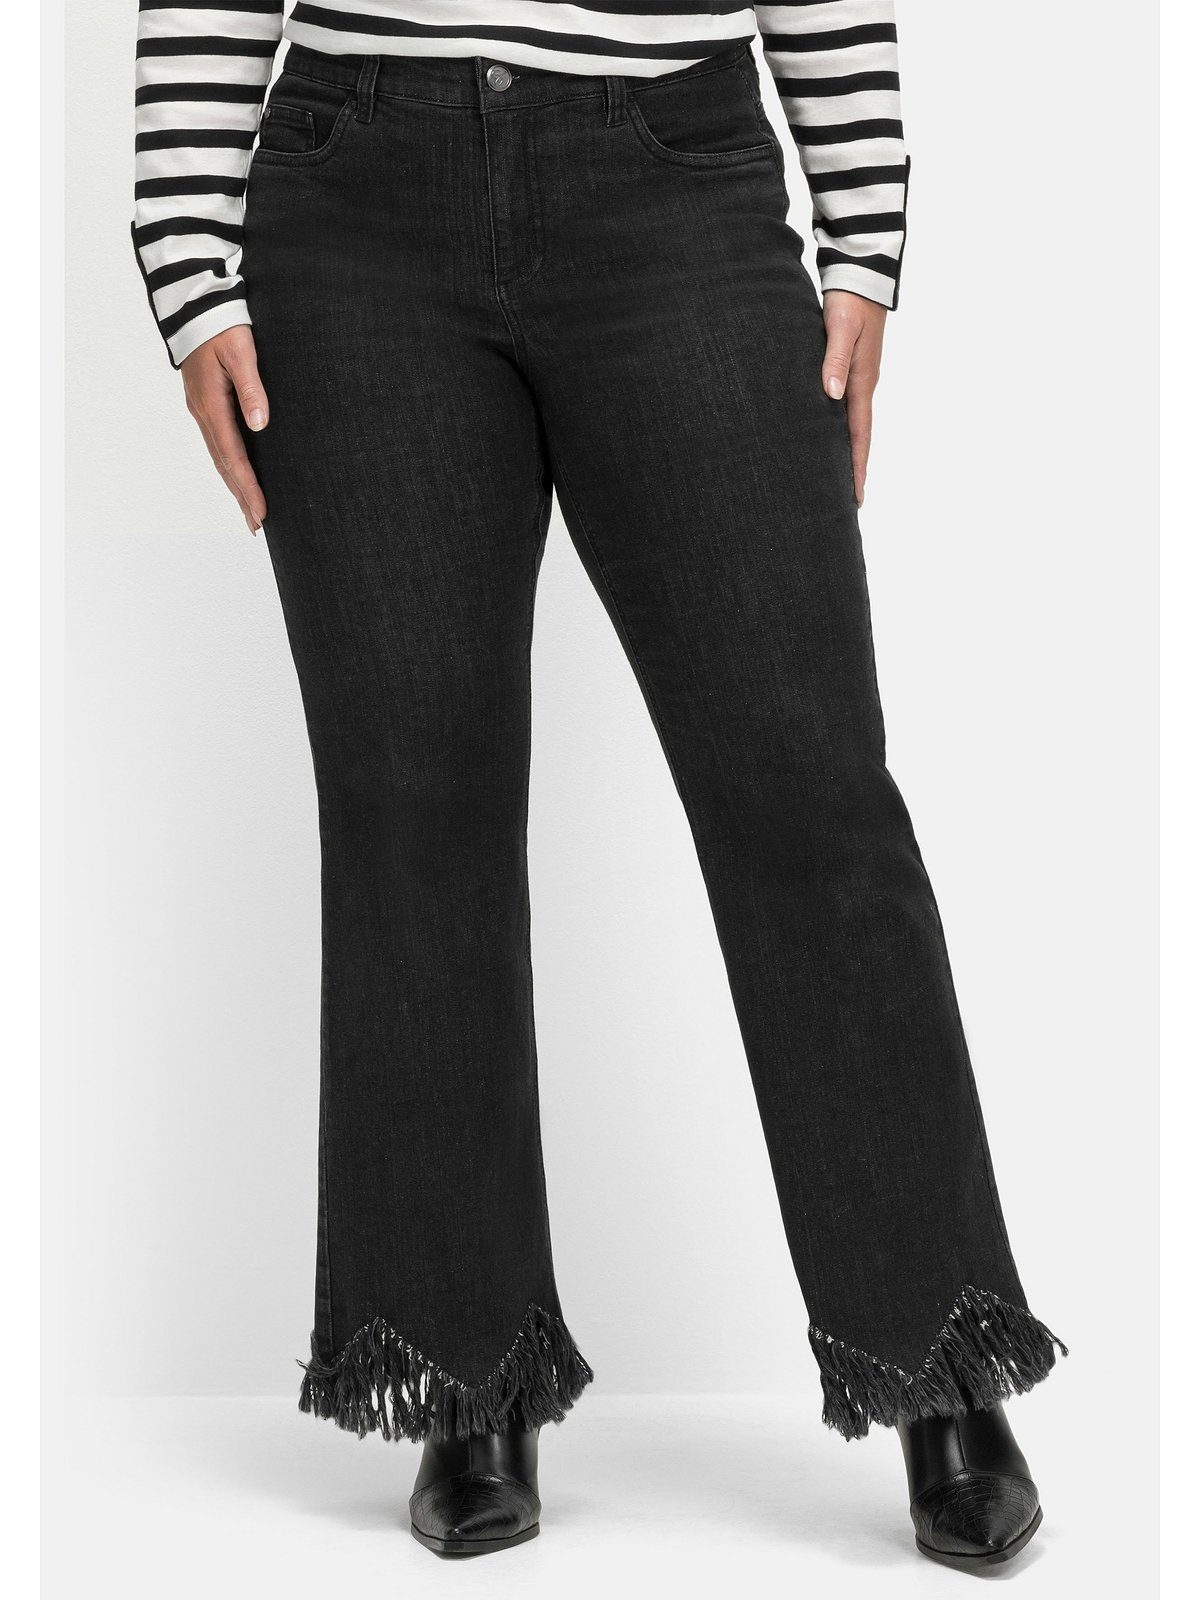 Große mit Fransensaum Bootcut-Jeans in Sheego Größen Zickzack-Form